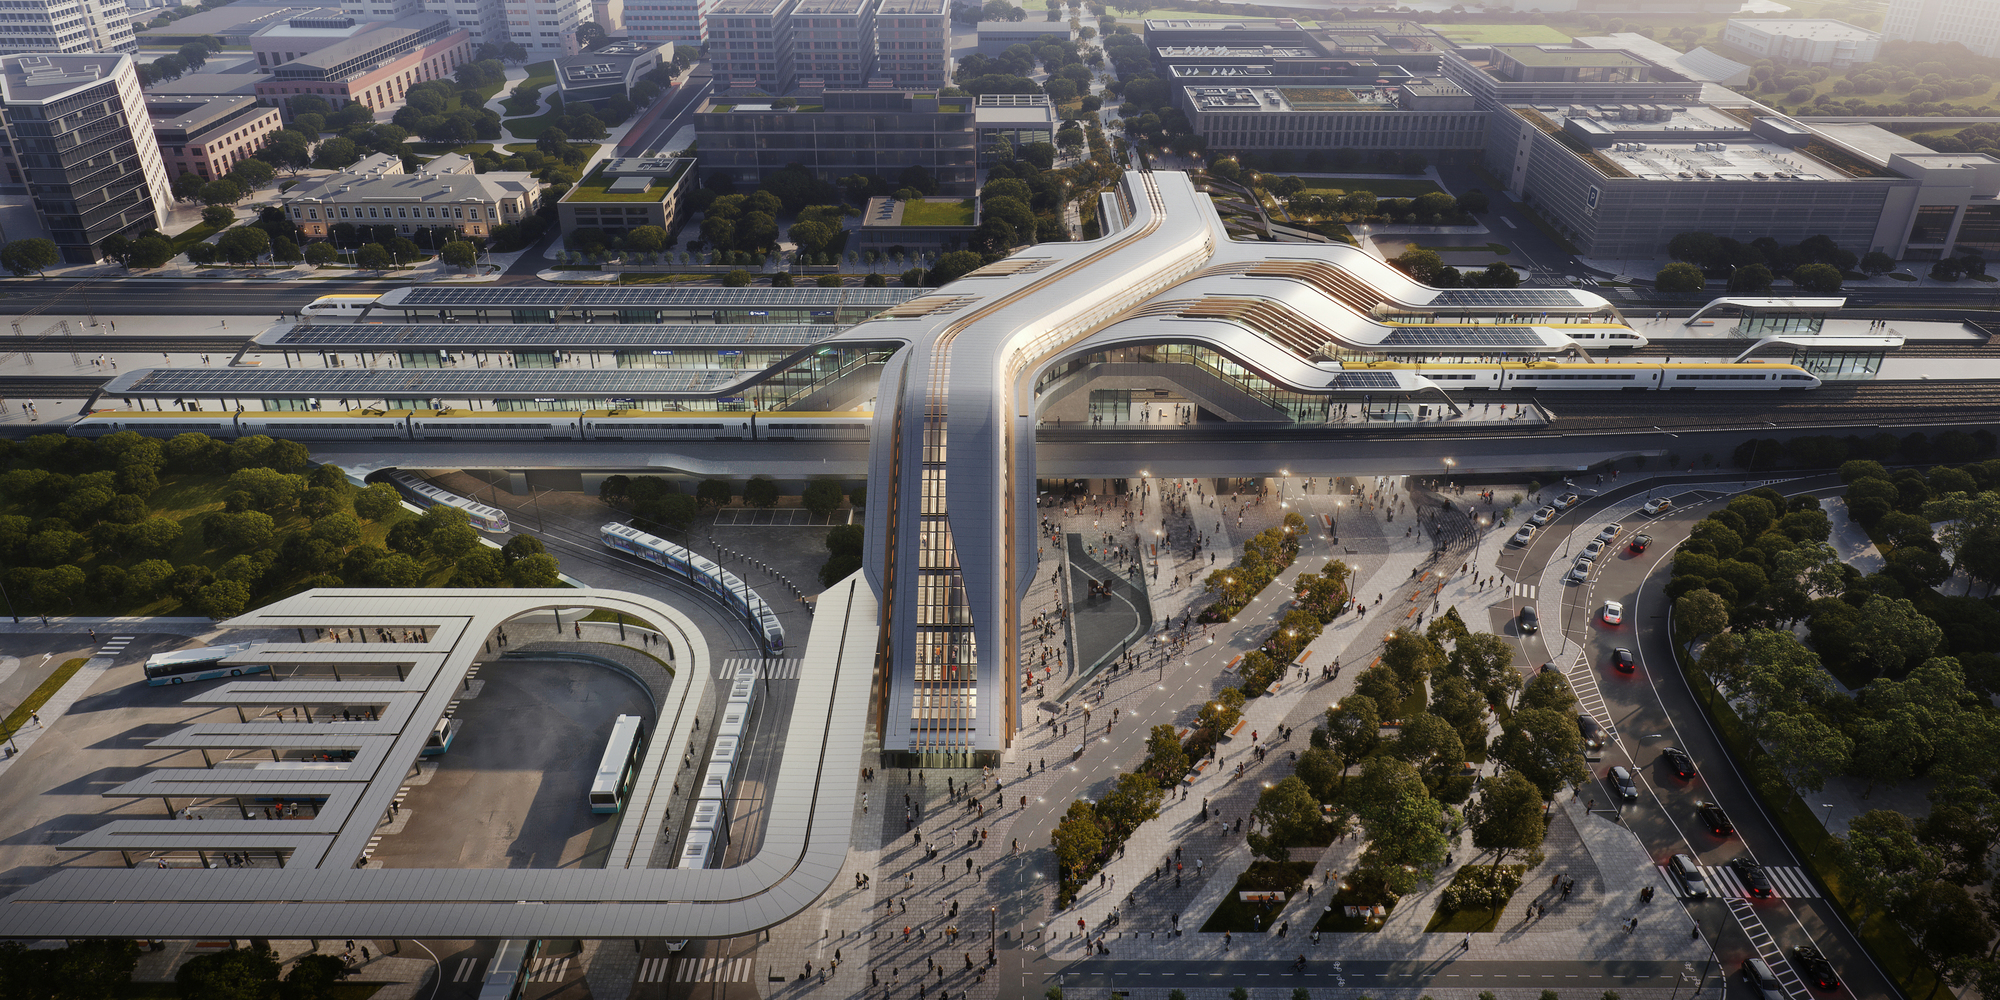 Начало строительства транспортного узла Юлемисте от Zaha Hadid Architects, который соединит Таллинн с европейской сетью высокоскоростных железных дорог